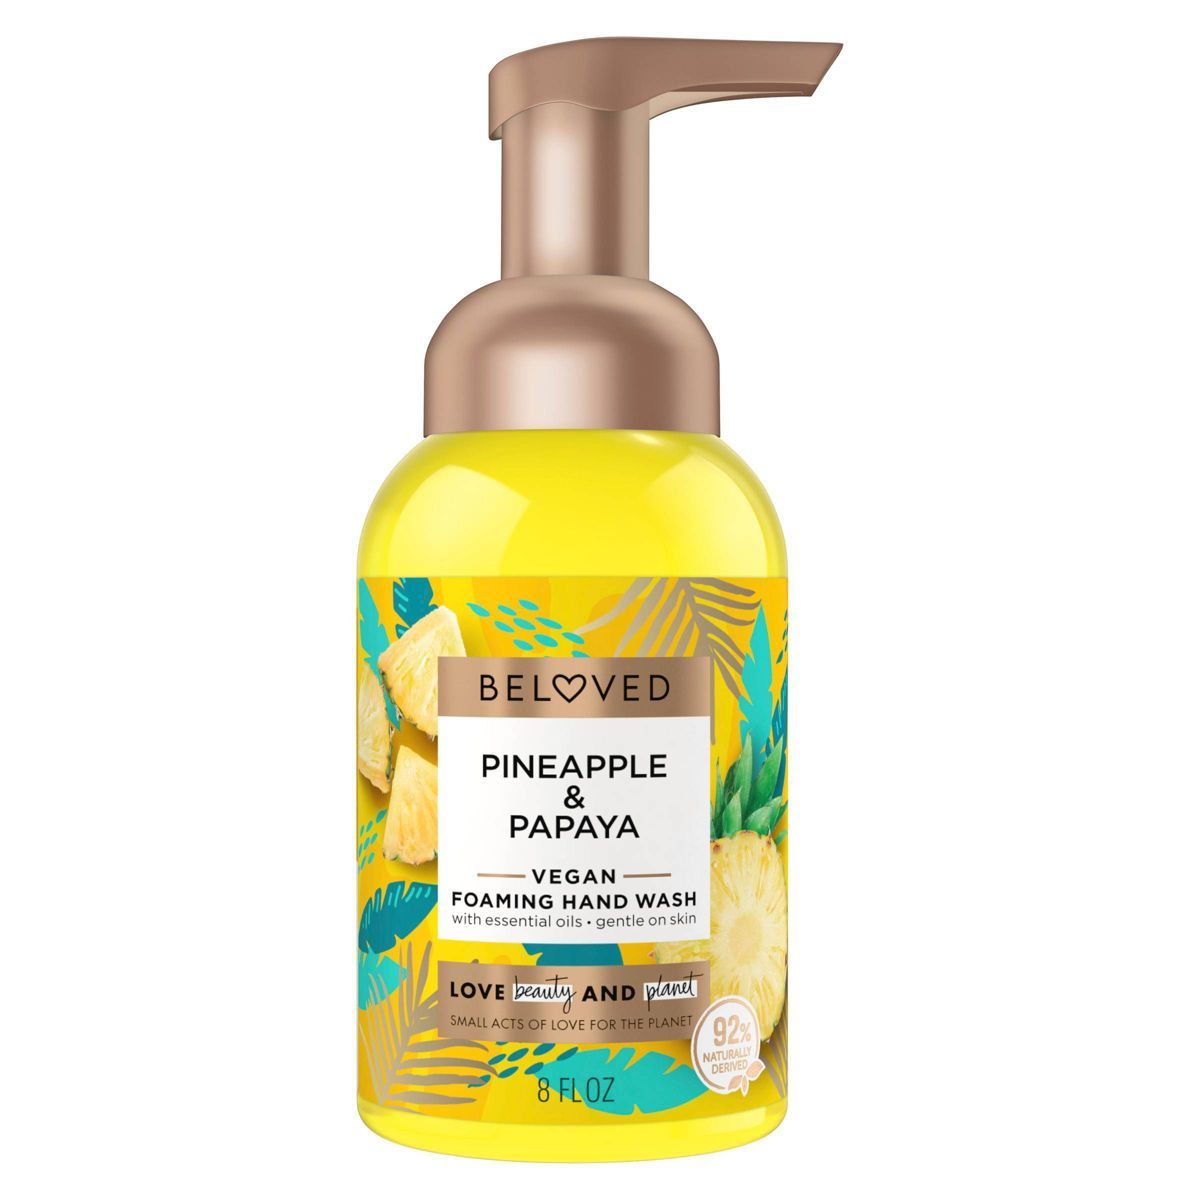 Beloved Pineapple & Papaya Foaming Hand Wash - 8 fl oz | Target